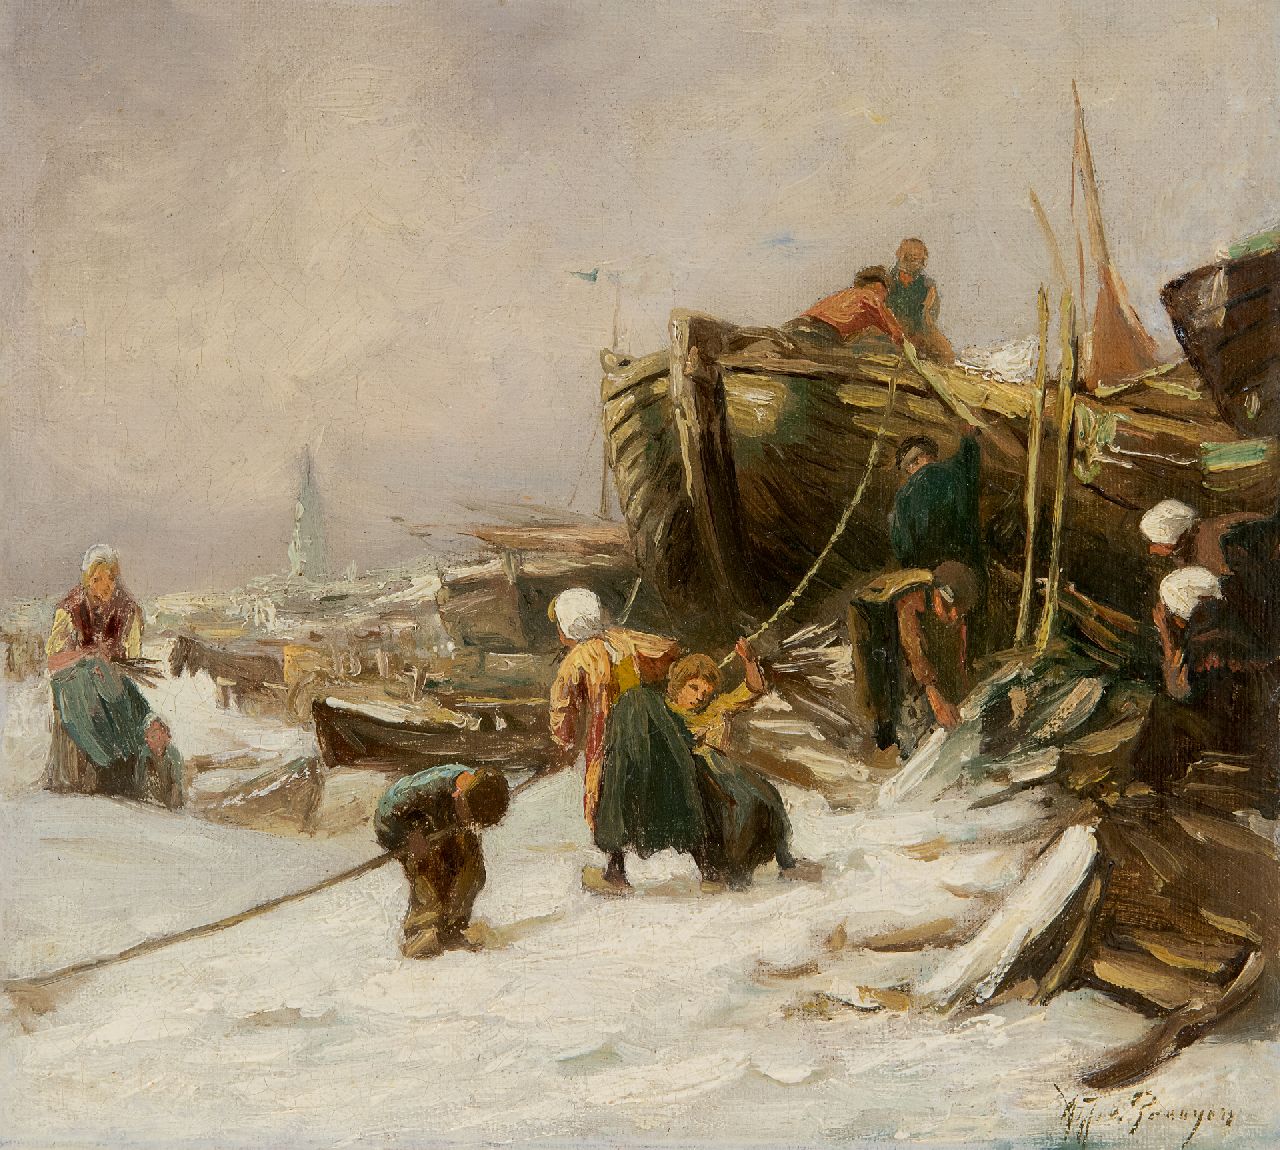 Prooijen A.J. van | Albert Jurardus van Prooijen | Schilderijen te koop aangeboden | Winter op het strand, olieverf op doek op paneel 21,1 x 22,8 cm, gesigneerd rechtsonder